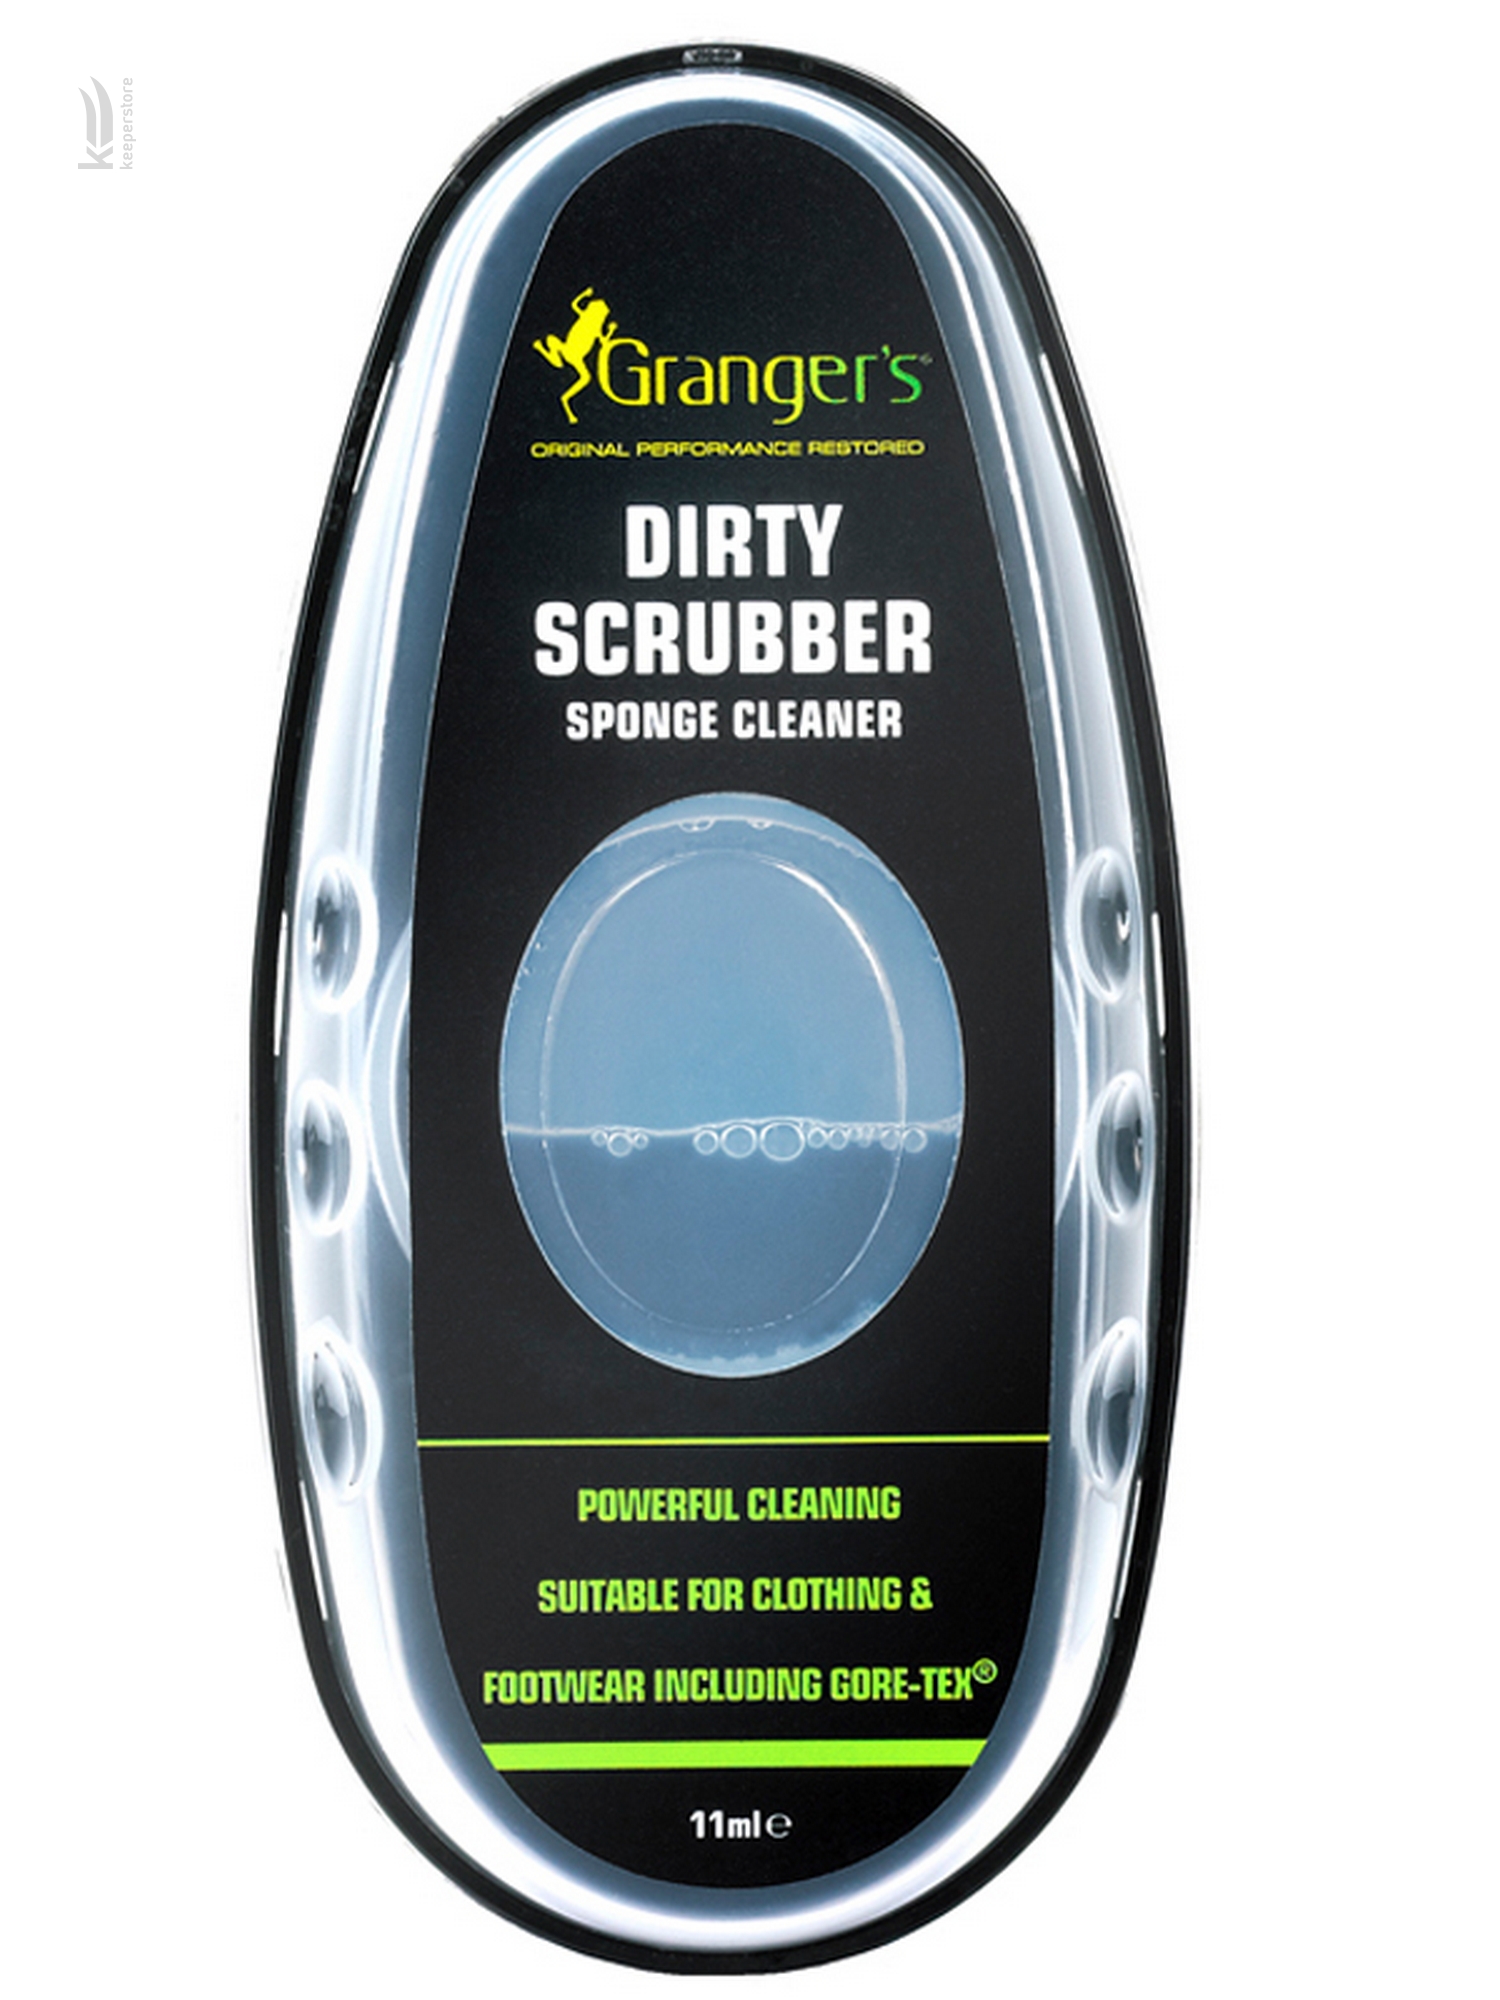 Купить средство для ручной чистки Granger's Dirty Scrubber в Киеве